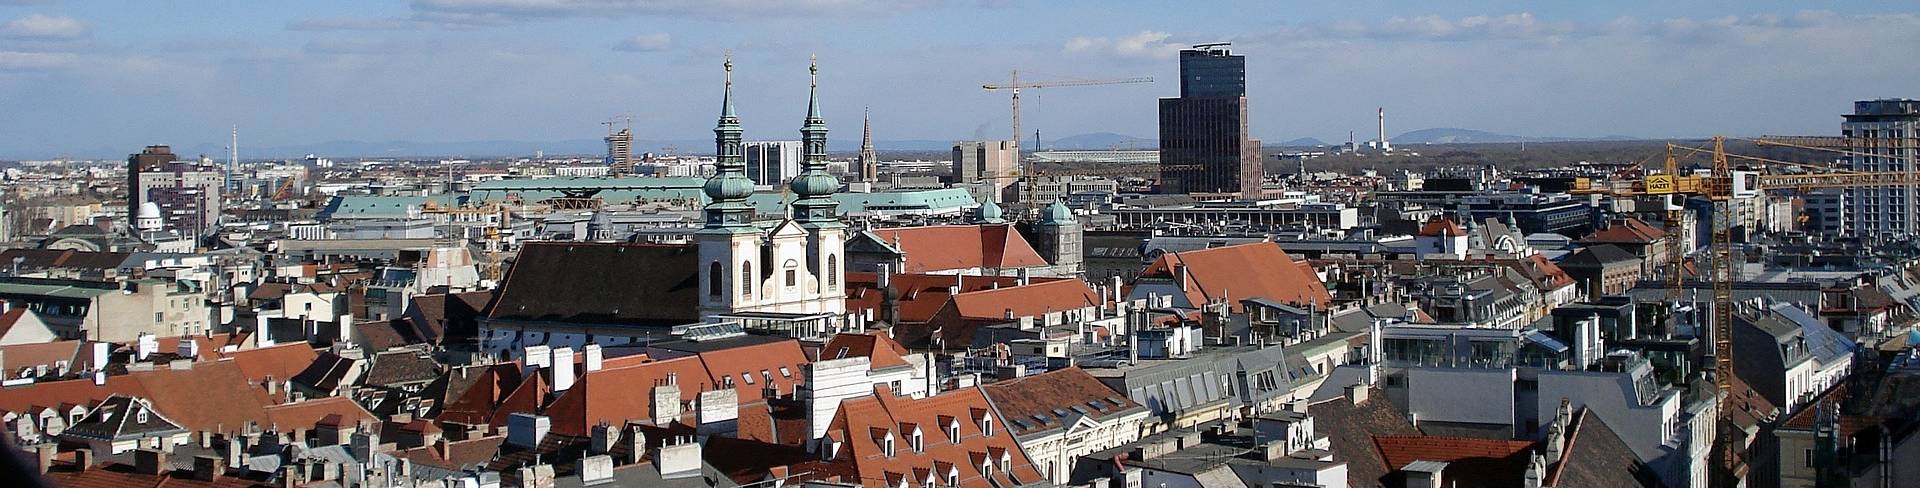 Вена - столица Австрии